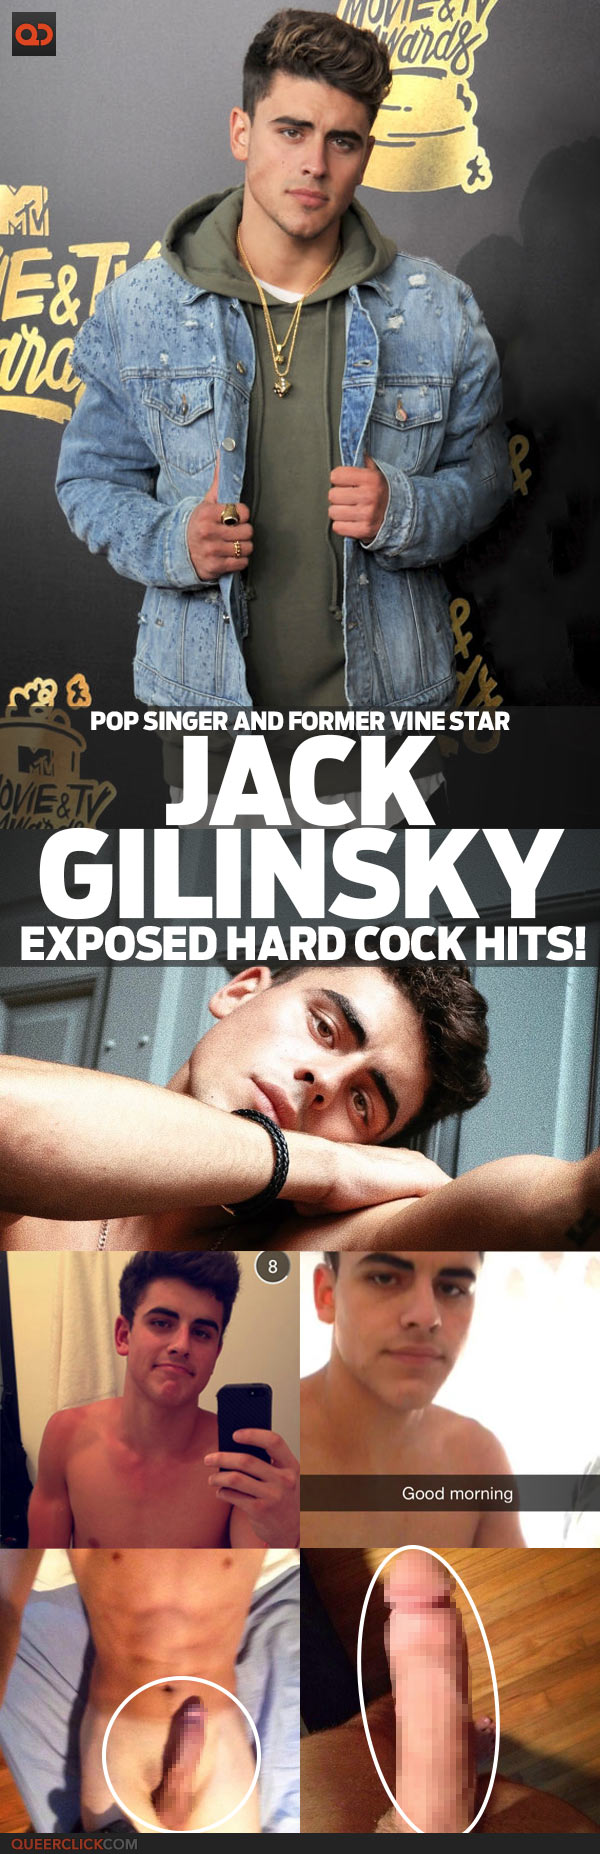 Jack Gilinsky, Pop Singer And Former Vine Star, Exposed Hard Cock Hits!